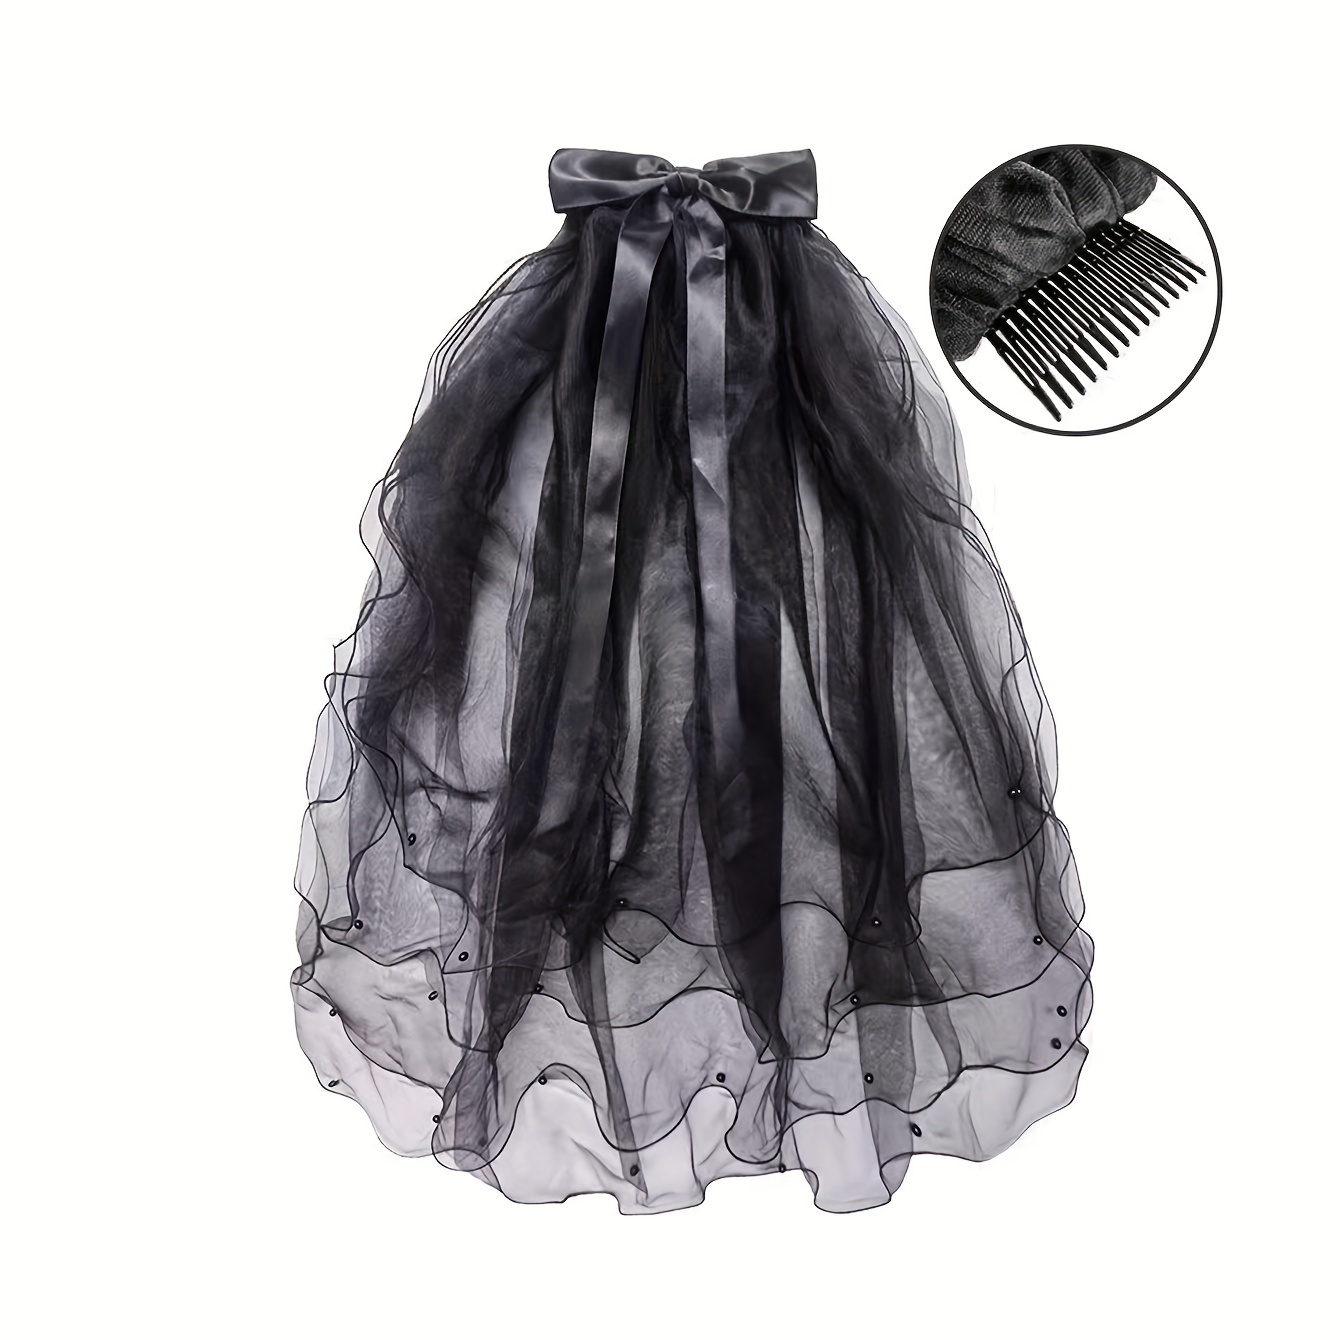 1 pieza de velo negro con cuentas y volantes de varias capas con decoración  de perlas negras y lazo anudado de estilo nupcial gótico, ideal para bodas